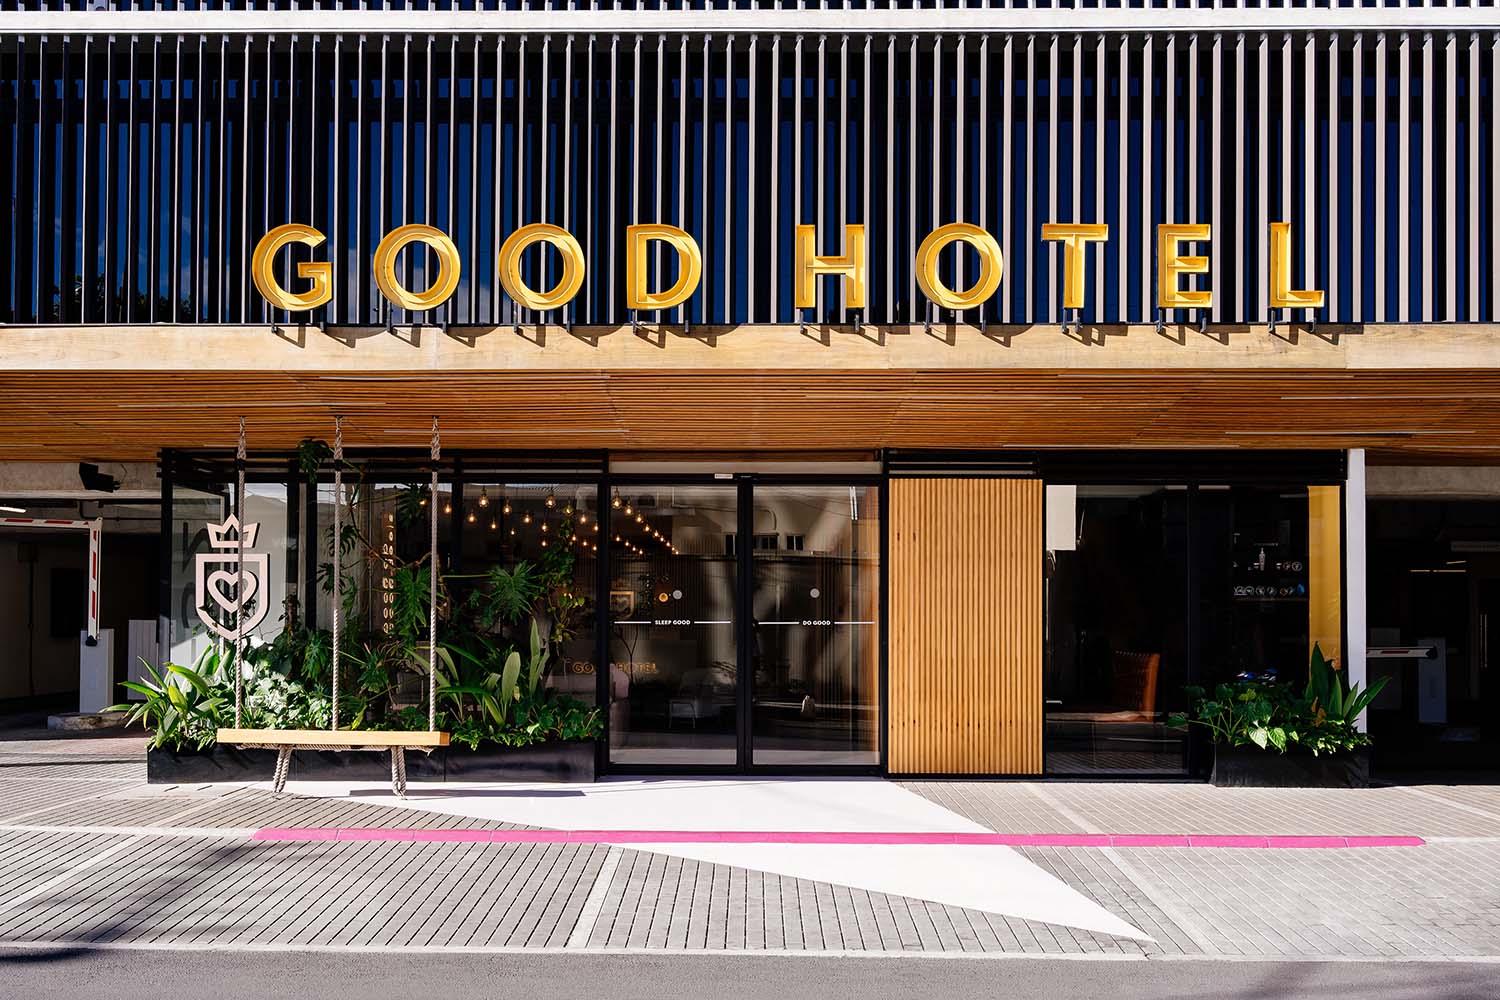 Good Hotel Guatemala City Dirancang oleh sembilan puluh sembilan